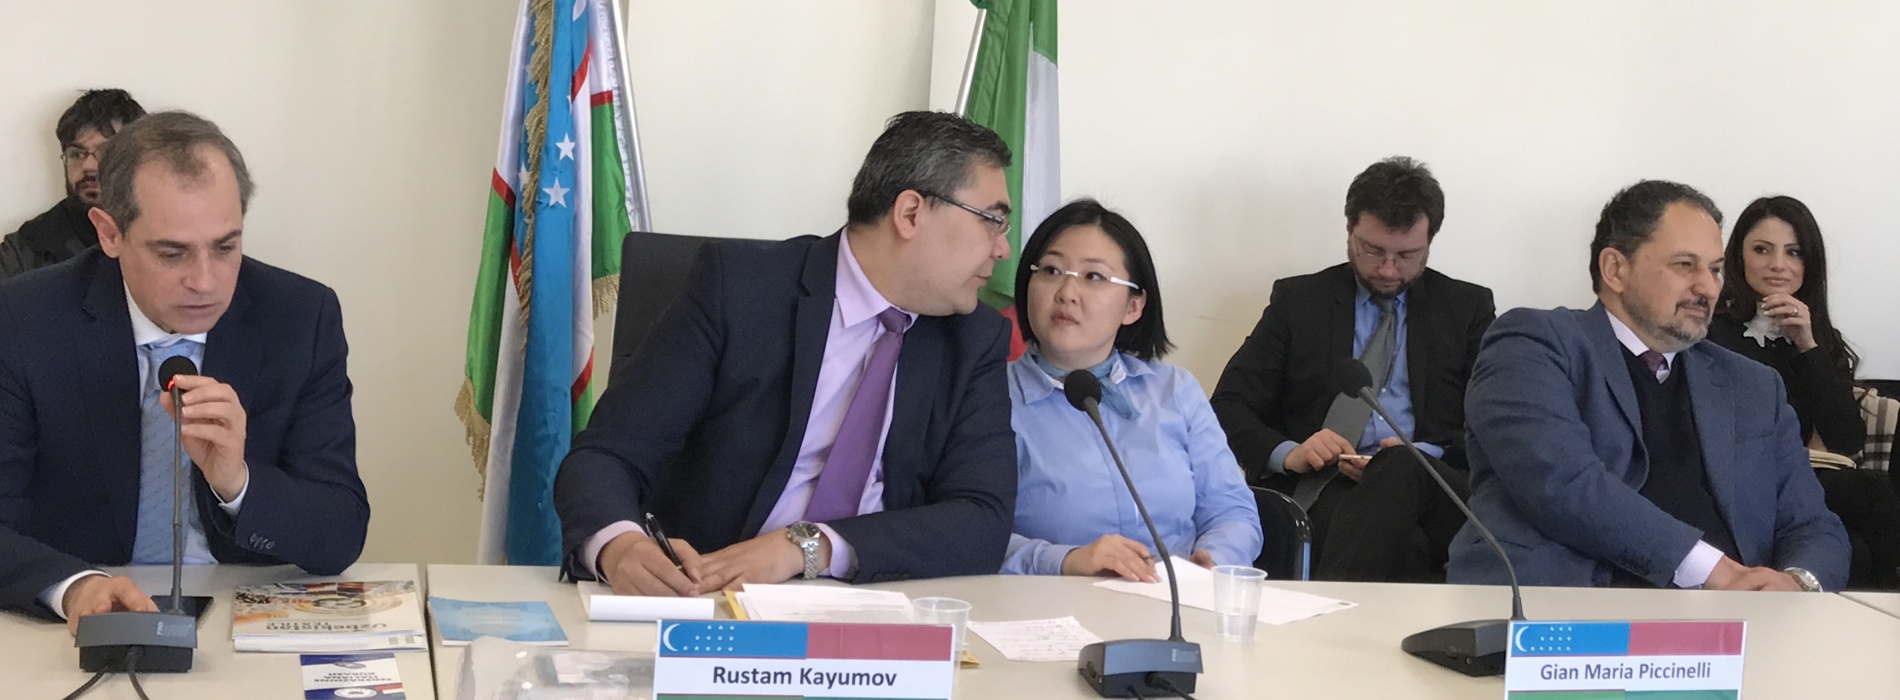 Caserta è pronta a collaborare con l’Uzbekistan